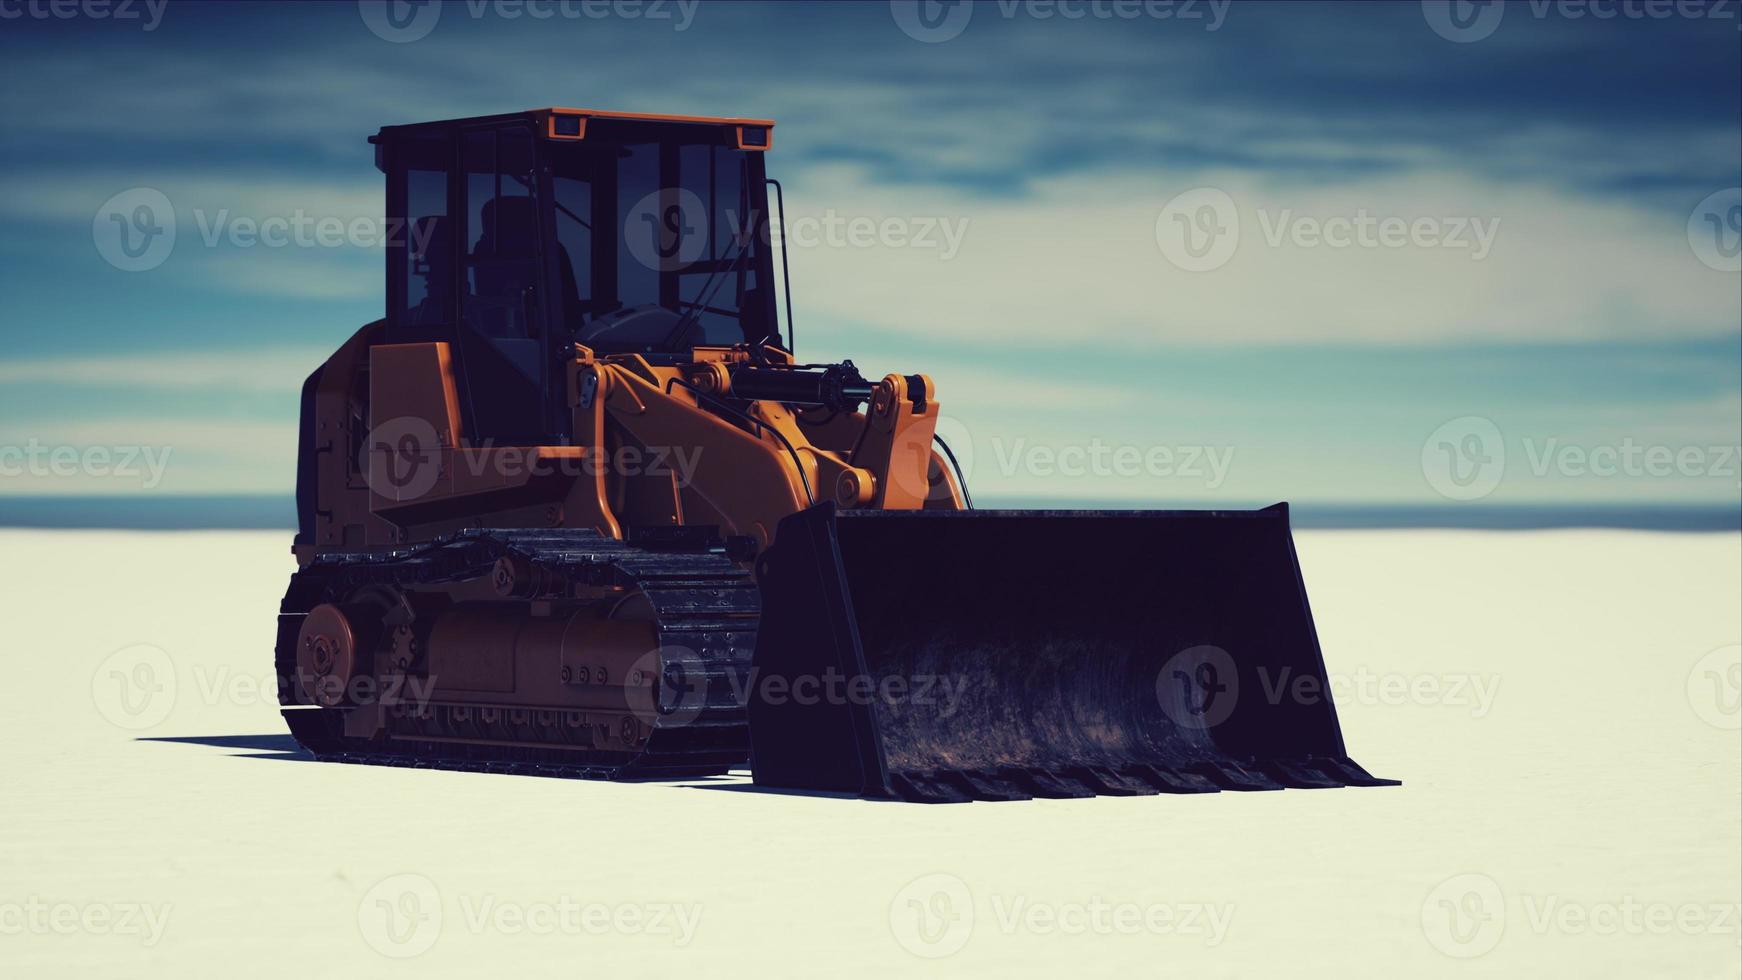 máquina niveladora de carreteras en la carretera del desierto de sal foto